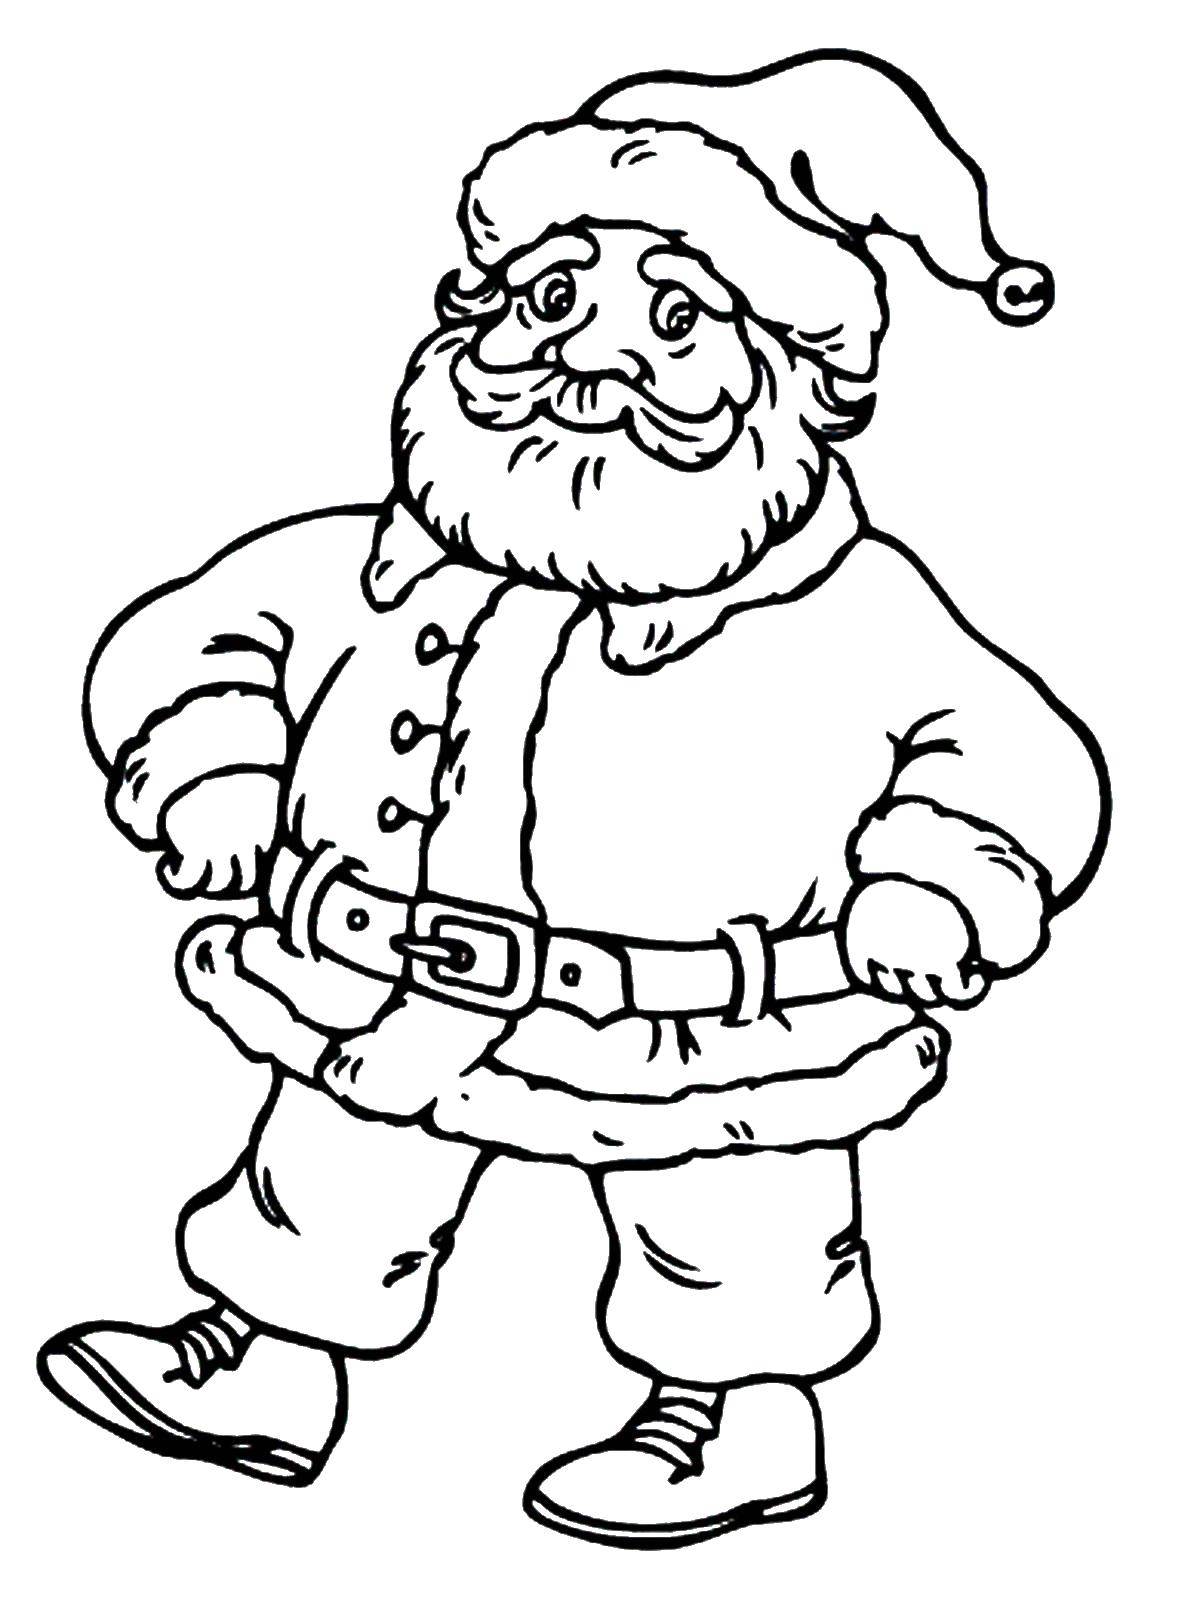 Coloring Santa Claus. Category Santa Claus. Tags:  New Year, Santa Claus, Santa Claus, gifts.